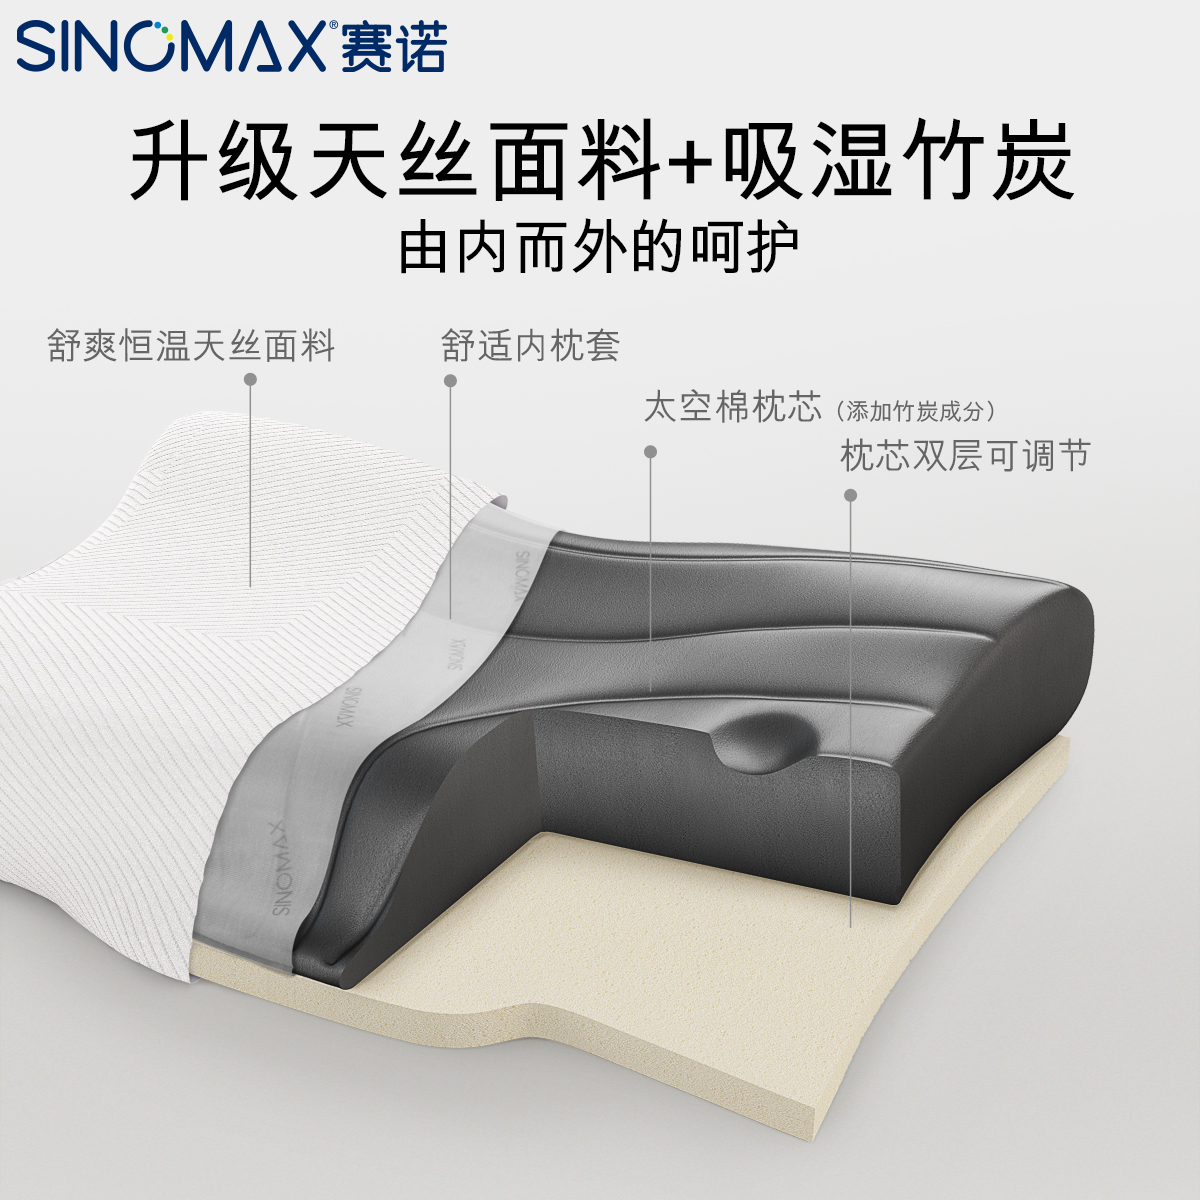 SINOMAX赛诺典雅美梦4D二代记忆枕头枕芯双层护颈枕颈椎脊椎保护 - 图1